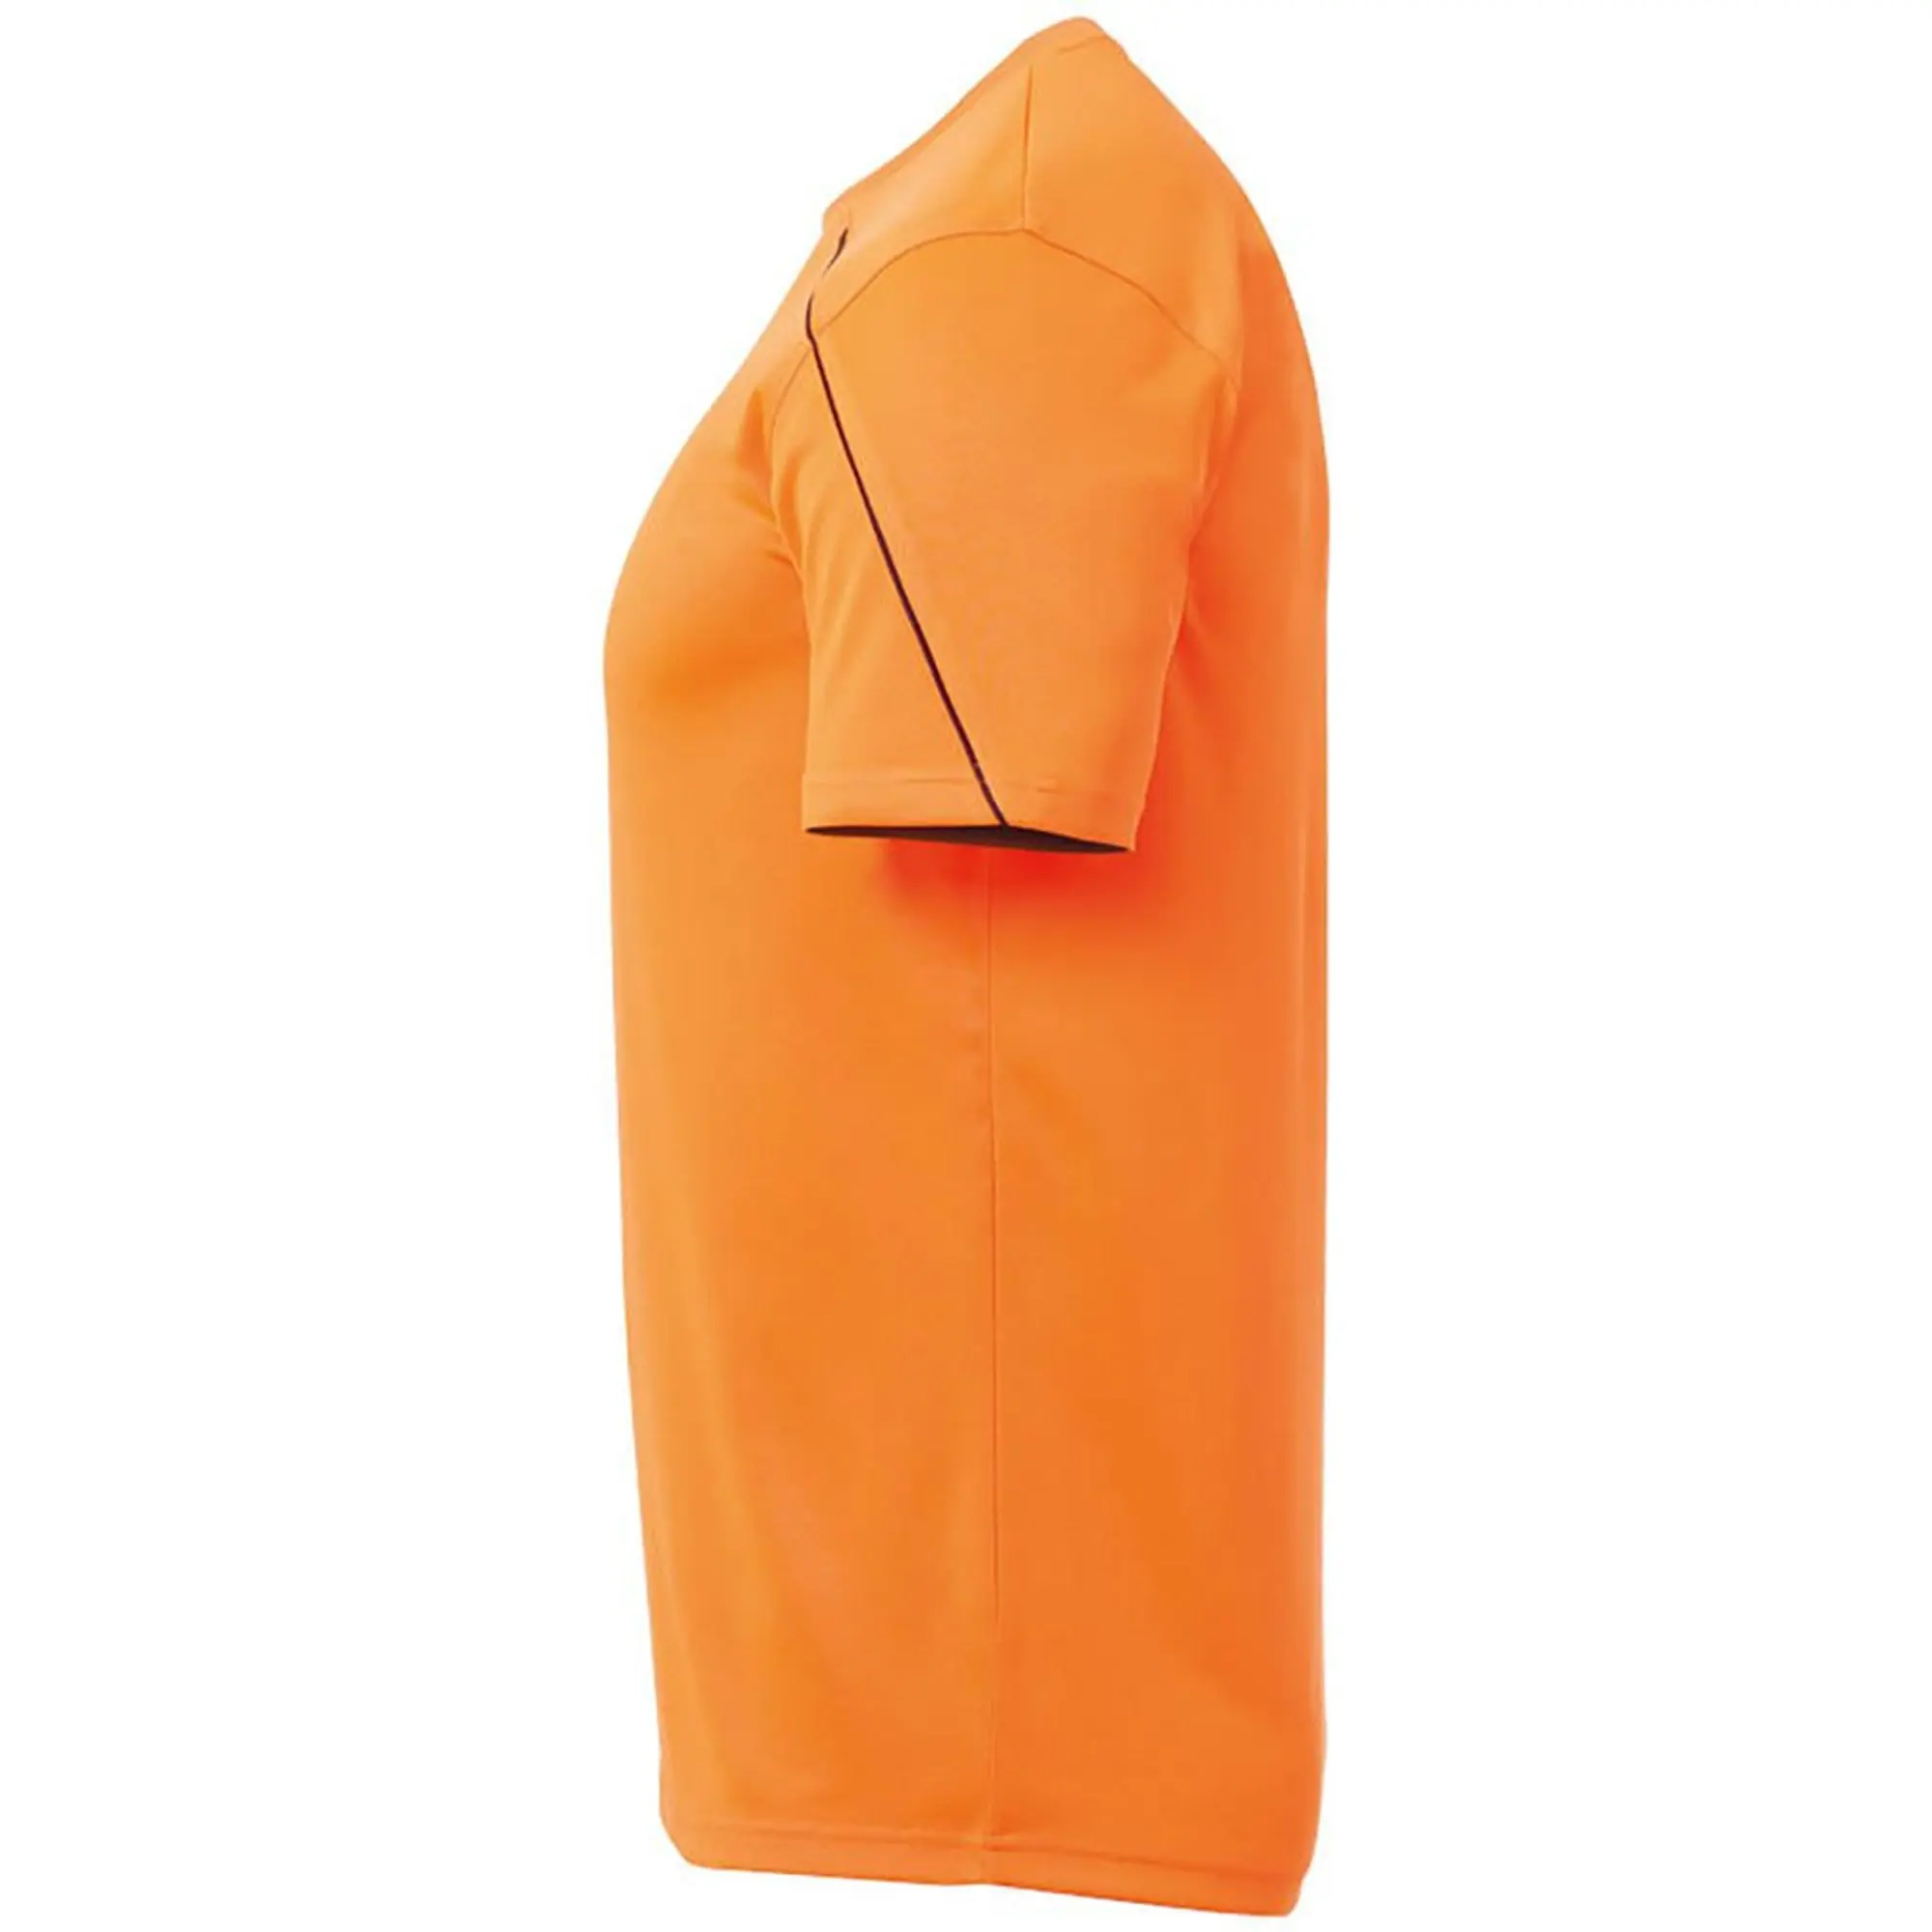 Uhlsport Stream 22 Short Sleeve T-shirt  - Orange